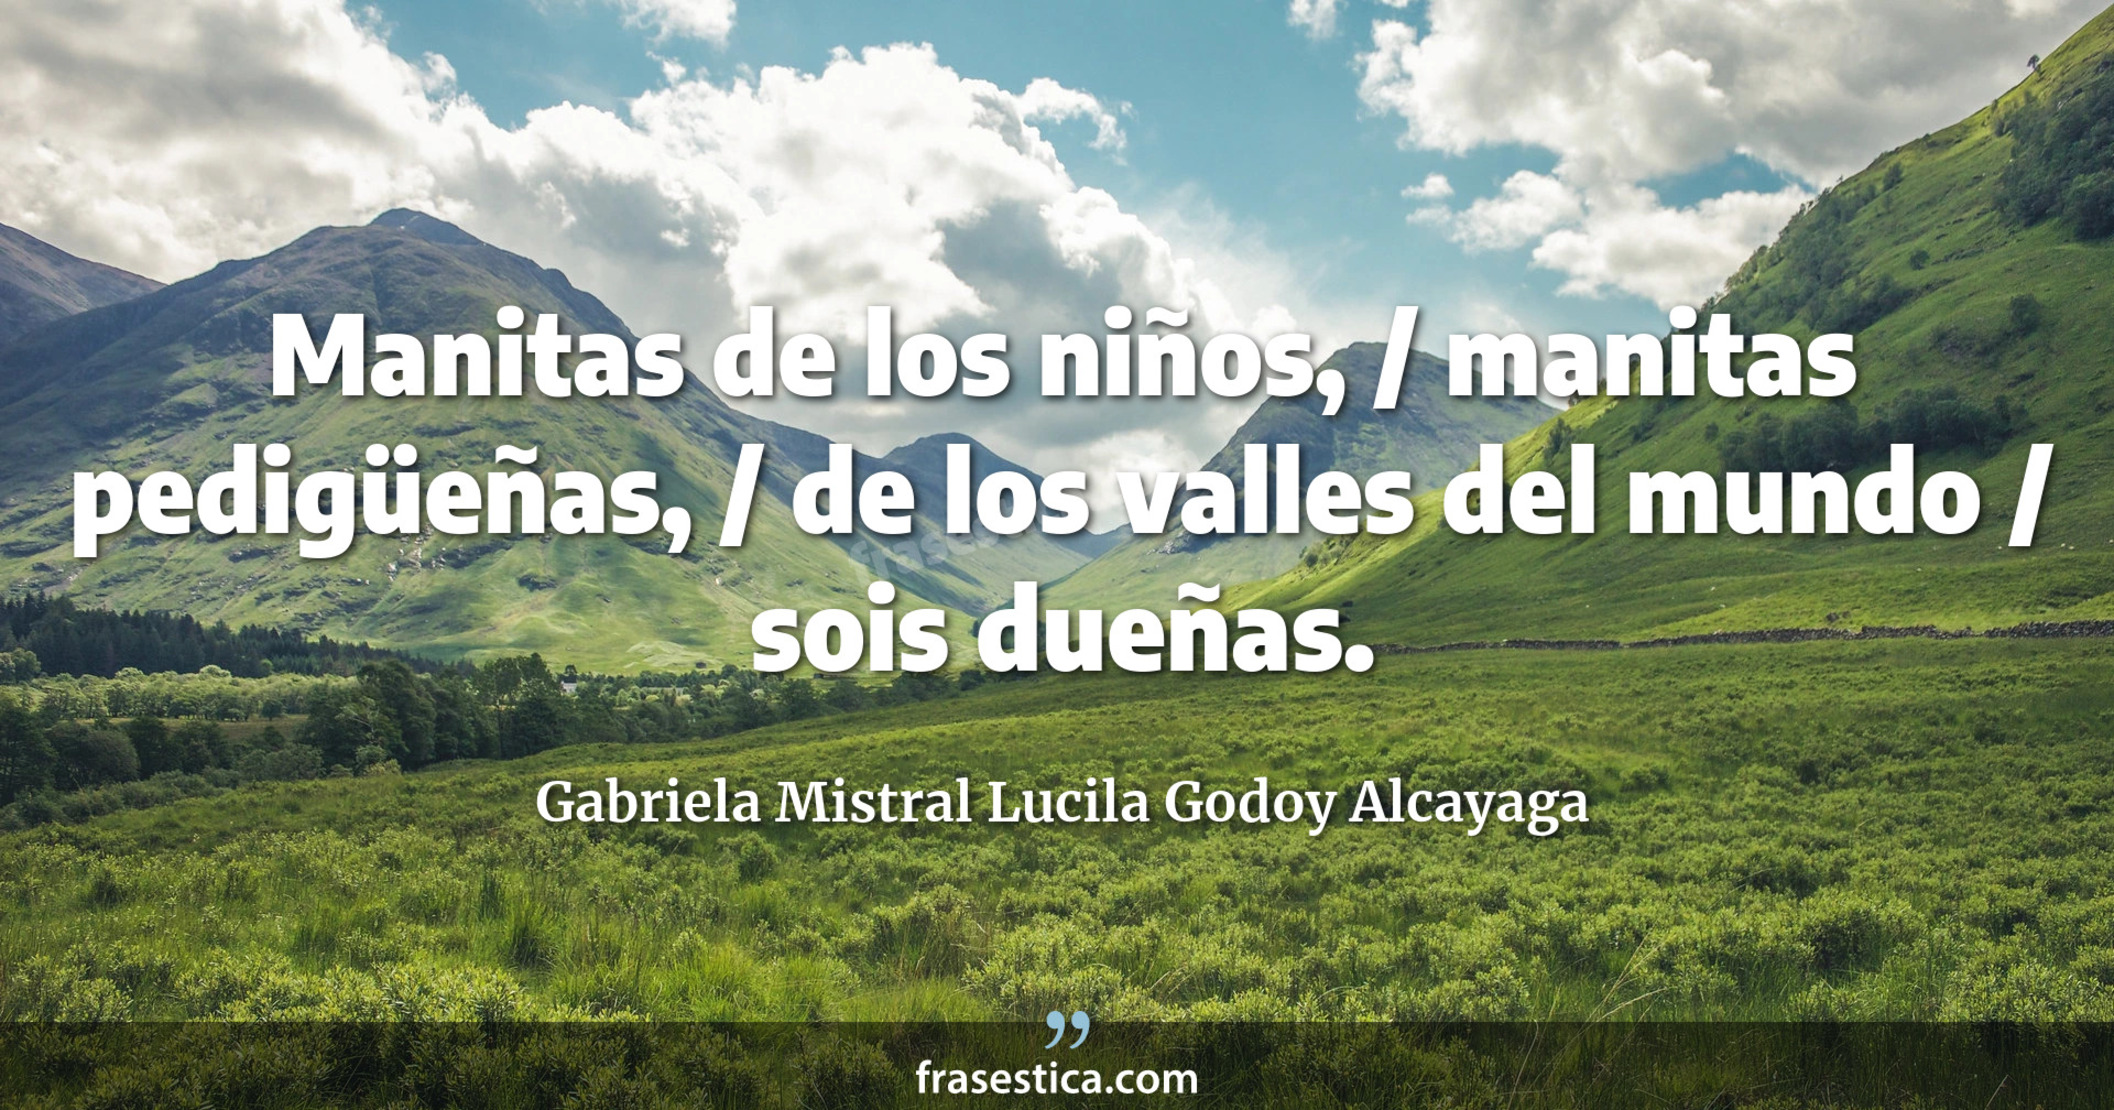 Manitas de los niños, / manitas pedigüeñas, / de los valles del mundo / sois dueñas. - Gabriela Mistral Lucila Godoy Alcayaga